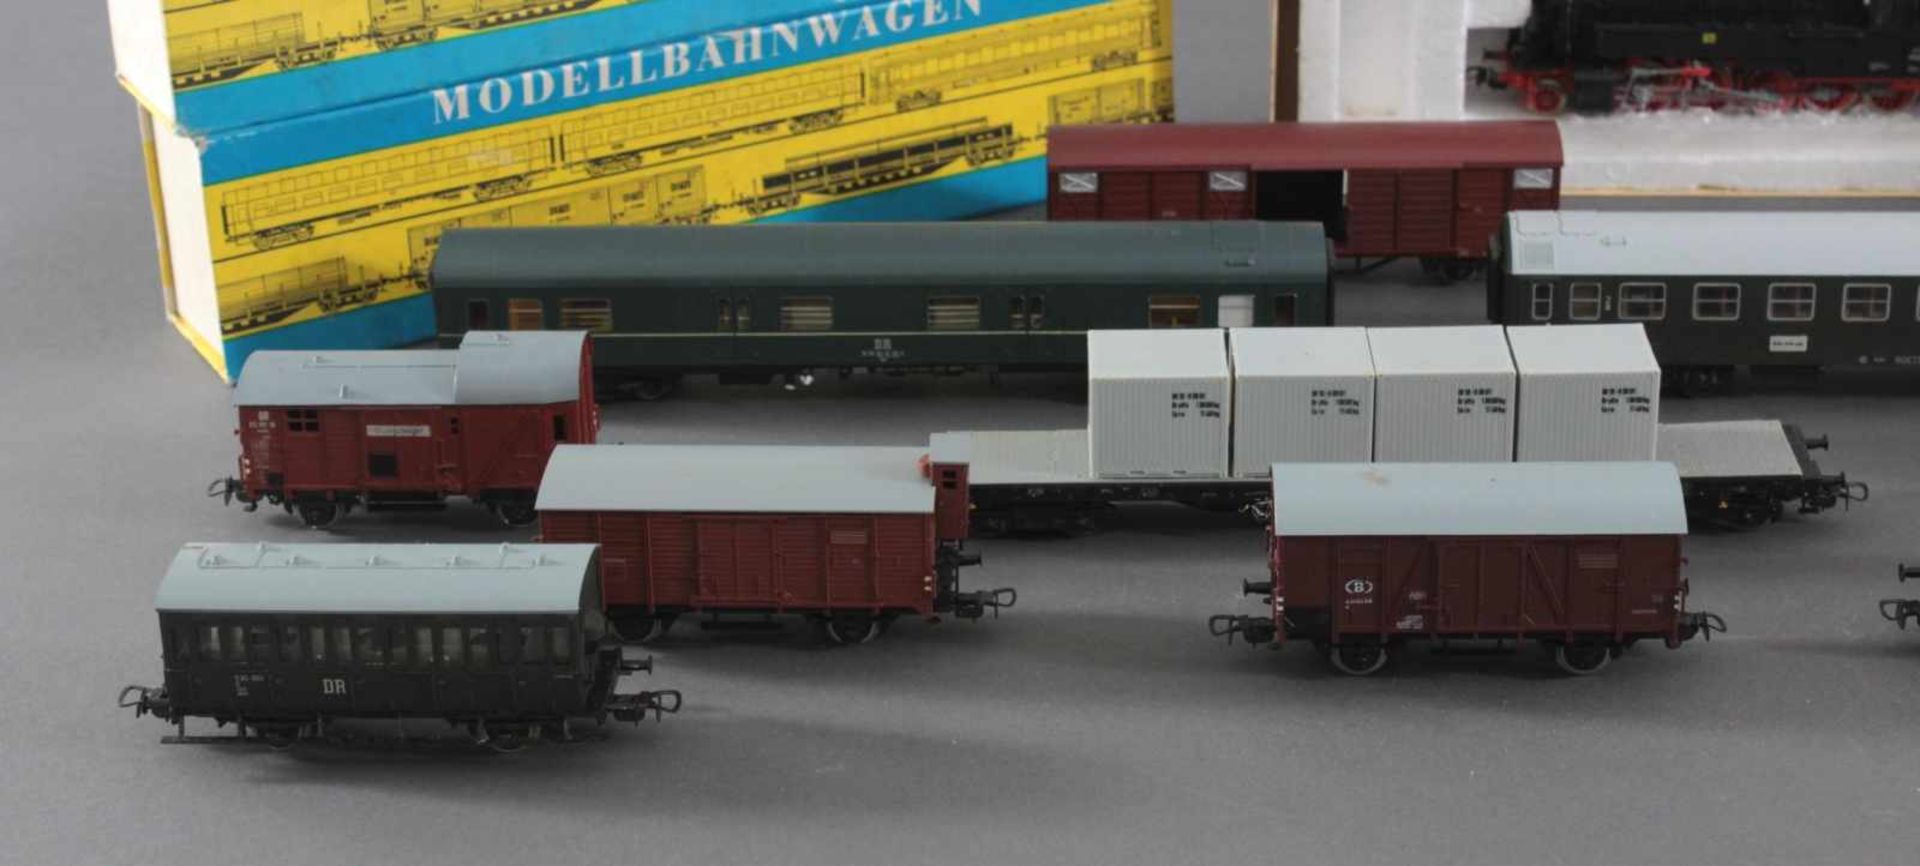 2 Piko Lokomotiven mit 13 Piko Waggons Spur H0Piko BR 95 und BR BR 38 Dampf-Loks in der - Bild 2 aus 5